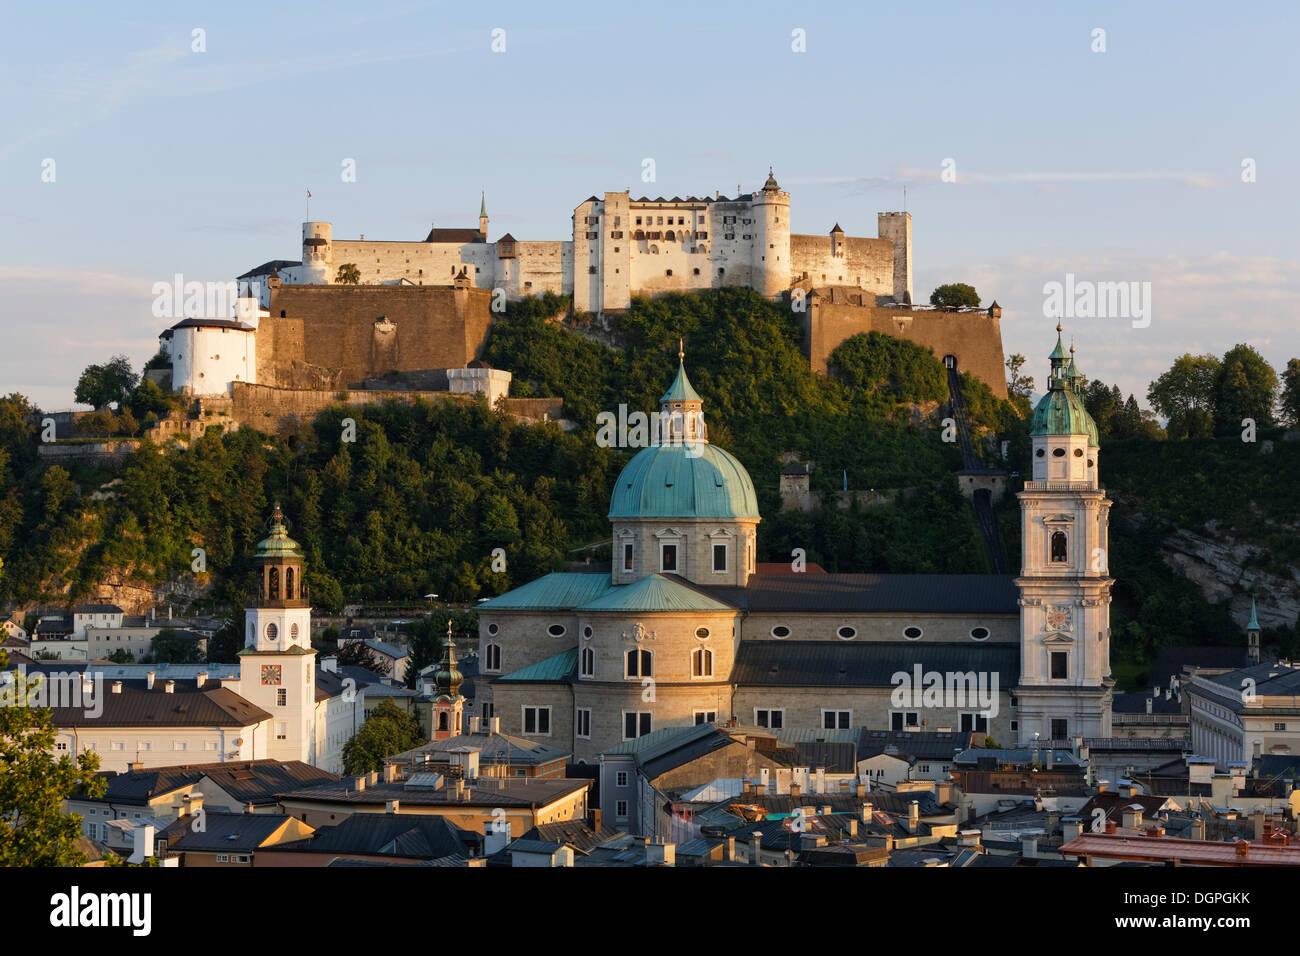 Blick auf die Festung Hohensalzburg, Neue Residenz Palast, der Turm mit Glockenspiel und Salzburger Dom aus gesehen Stockfoto